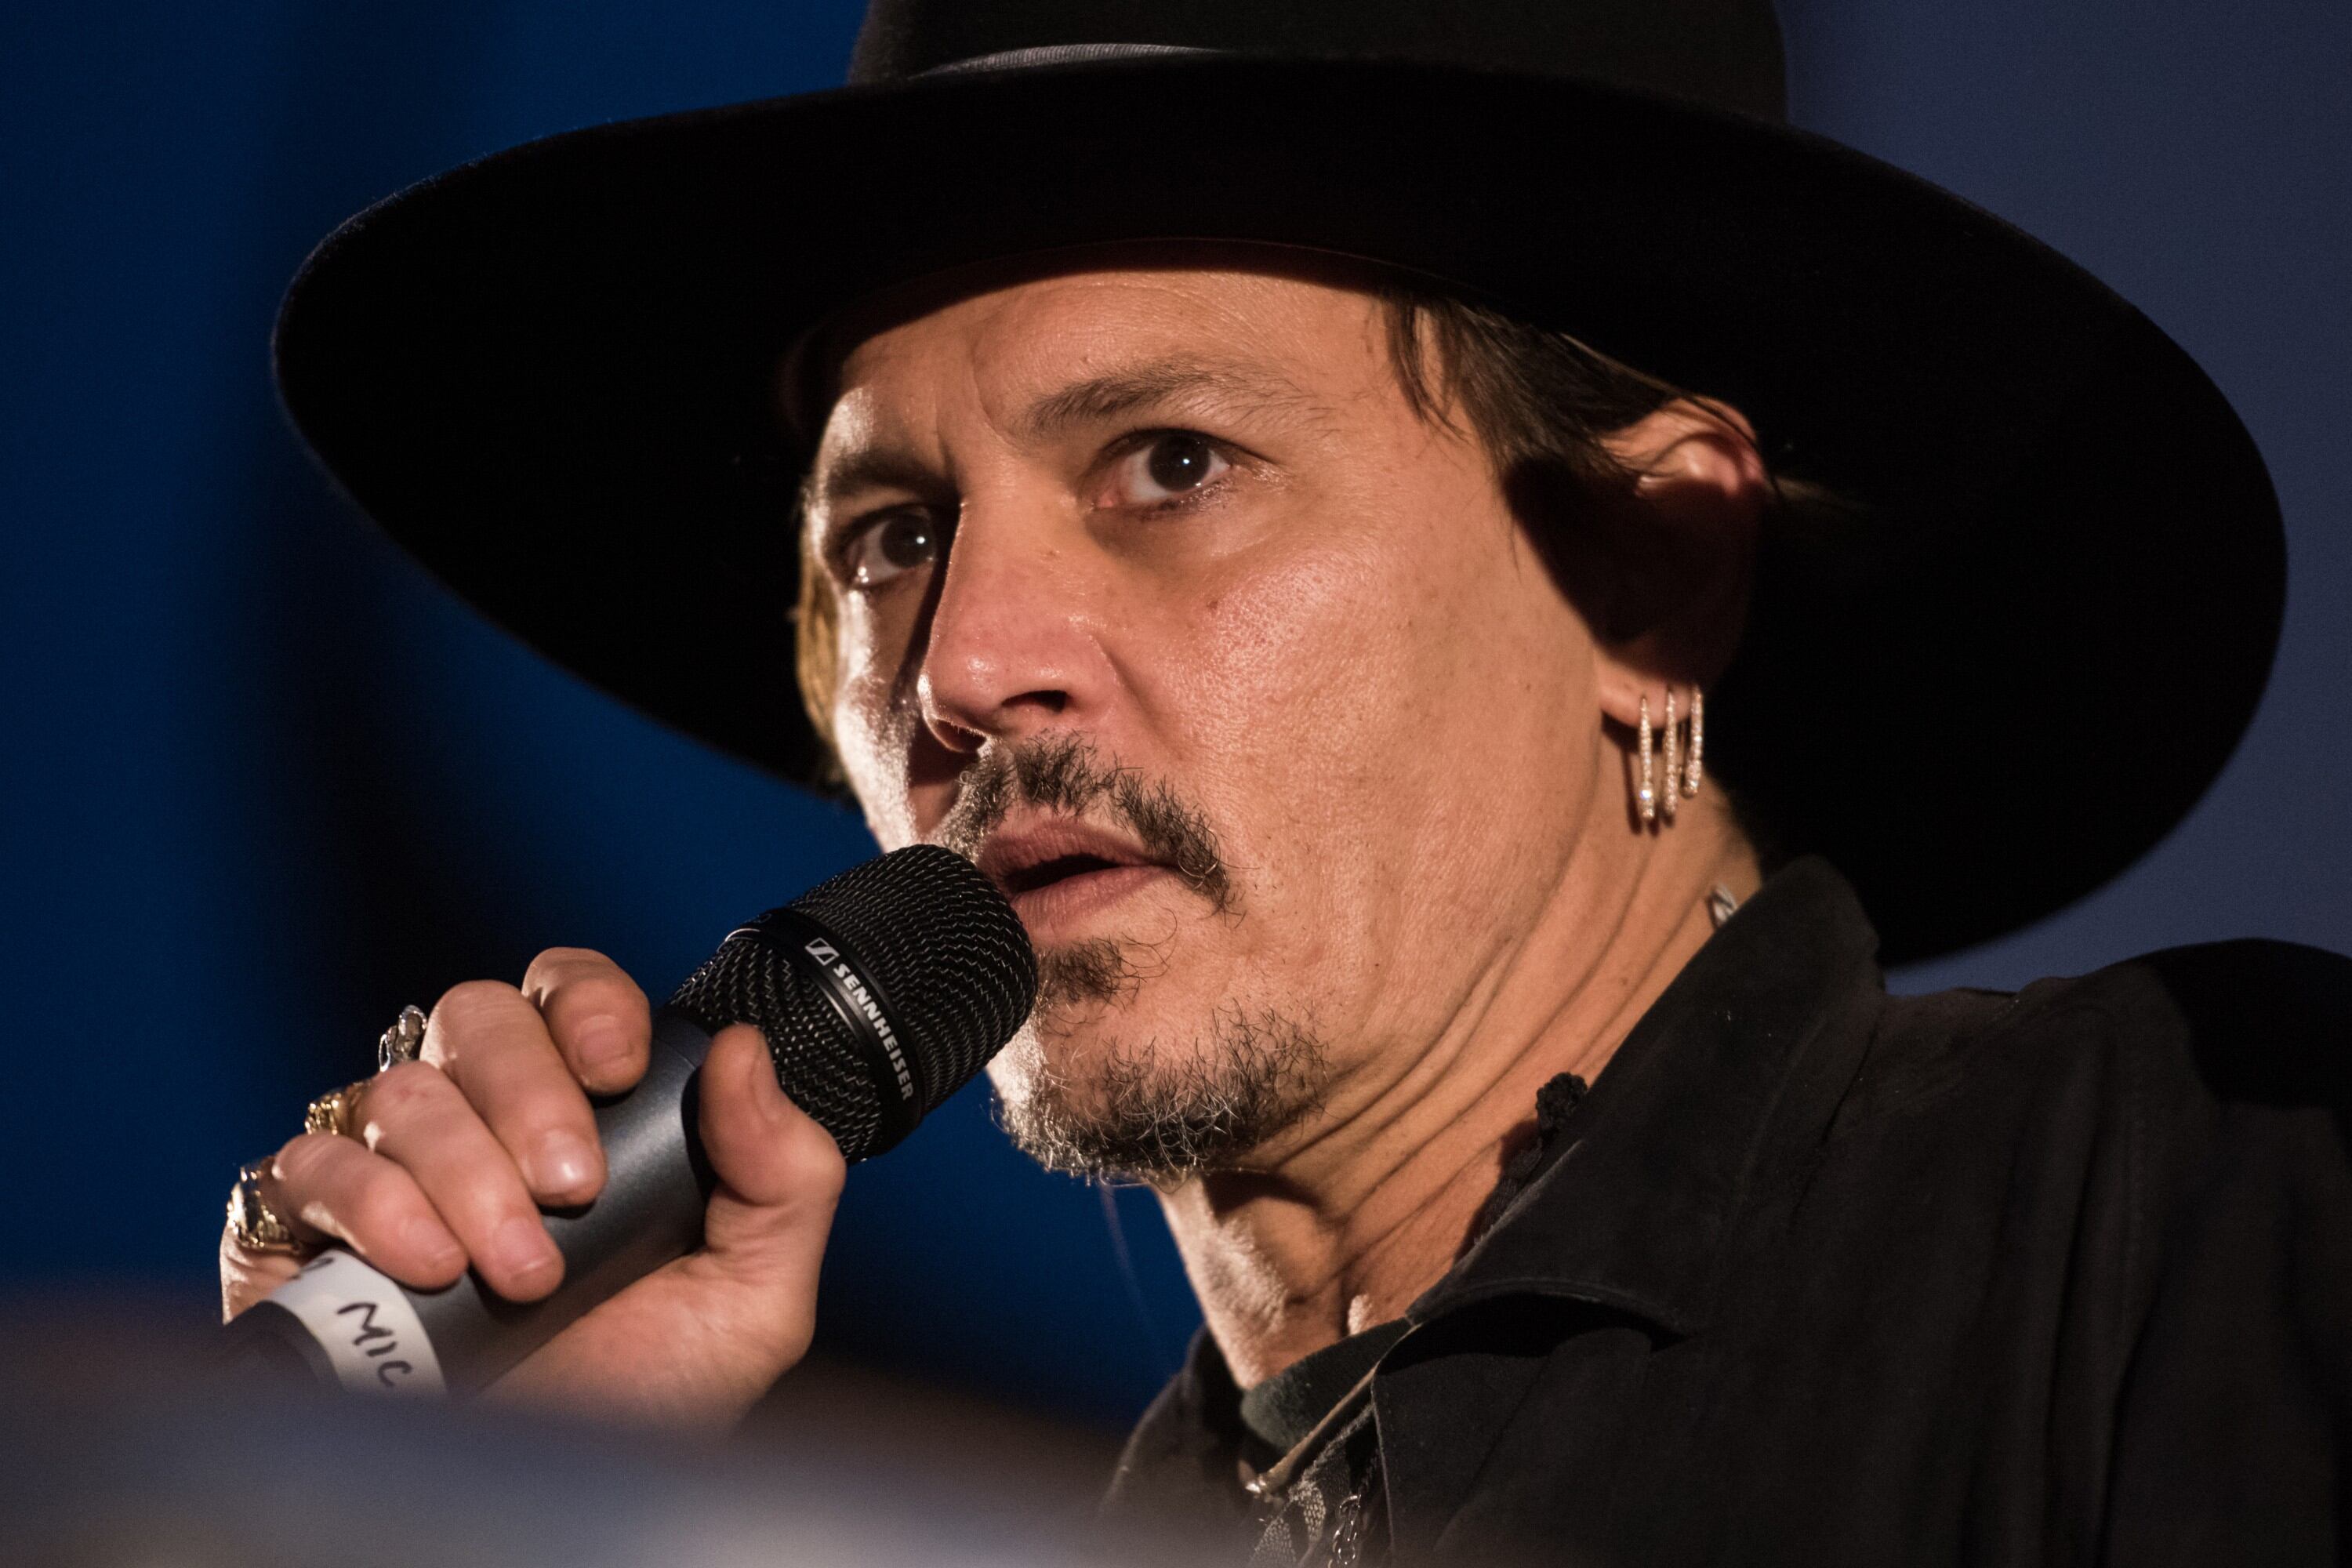 El actor Johnny Depp se disculpó el viernes por bromear en un festival de música sobre el presidente Donald Trump siendo asesinado, lo que provocó una reacción de enojo.